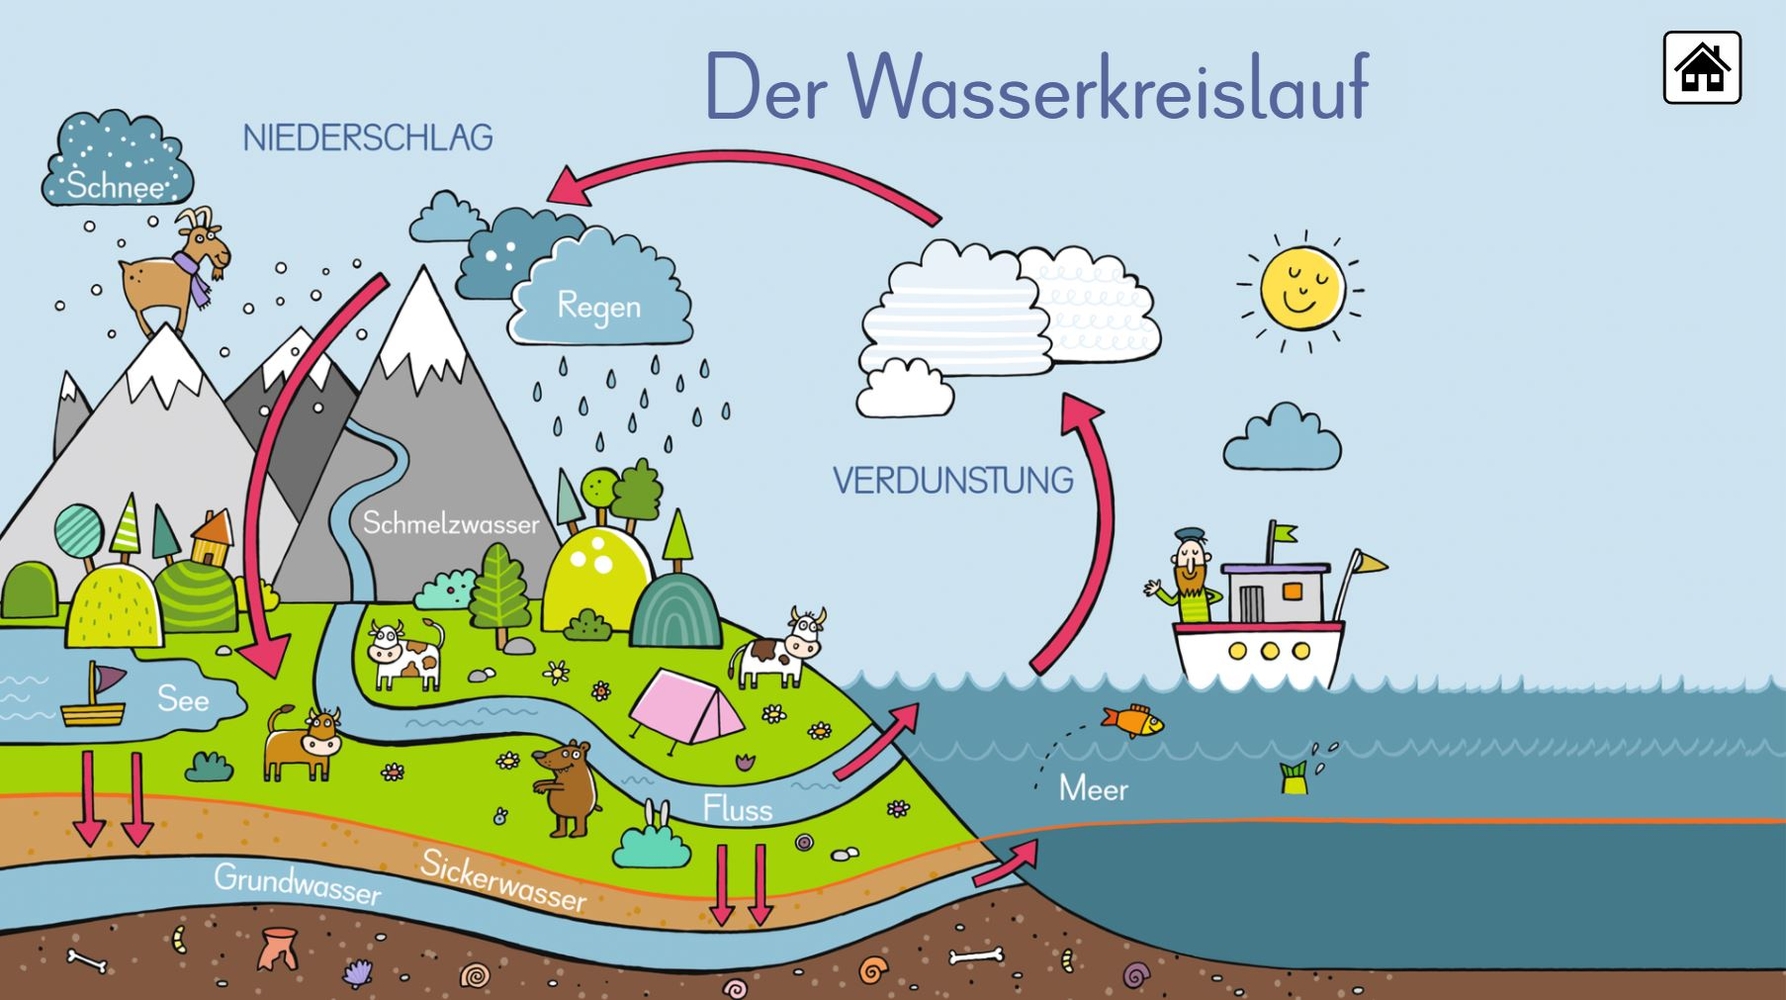 6 digitale Merk-Bilder für den Sachunterricht: Die Ernährungspyramide, Europa, Deutschland, Der Wasserkreislauf, Unsere Bäume, Unser Sonnensystem - Premium-Lizenz - Online